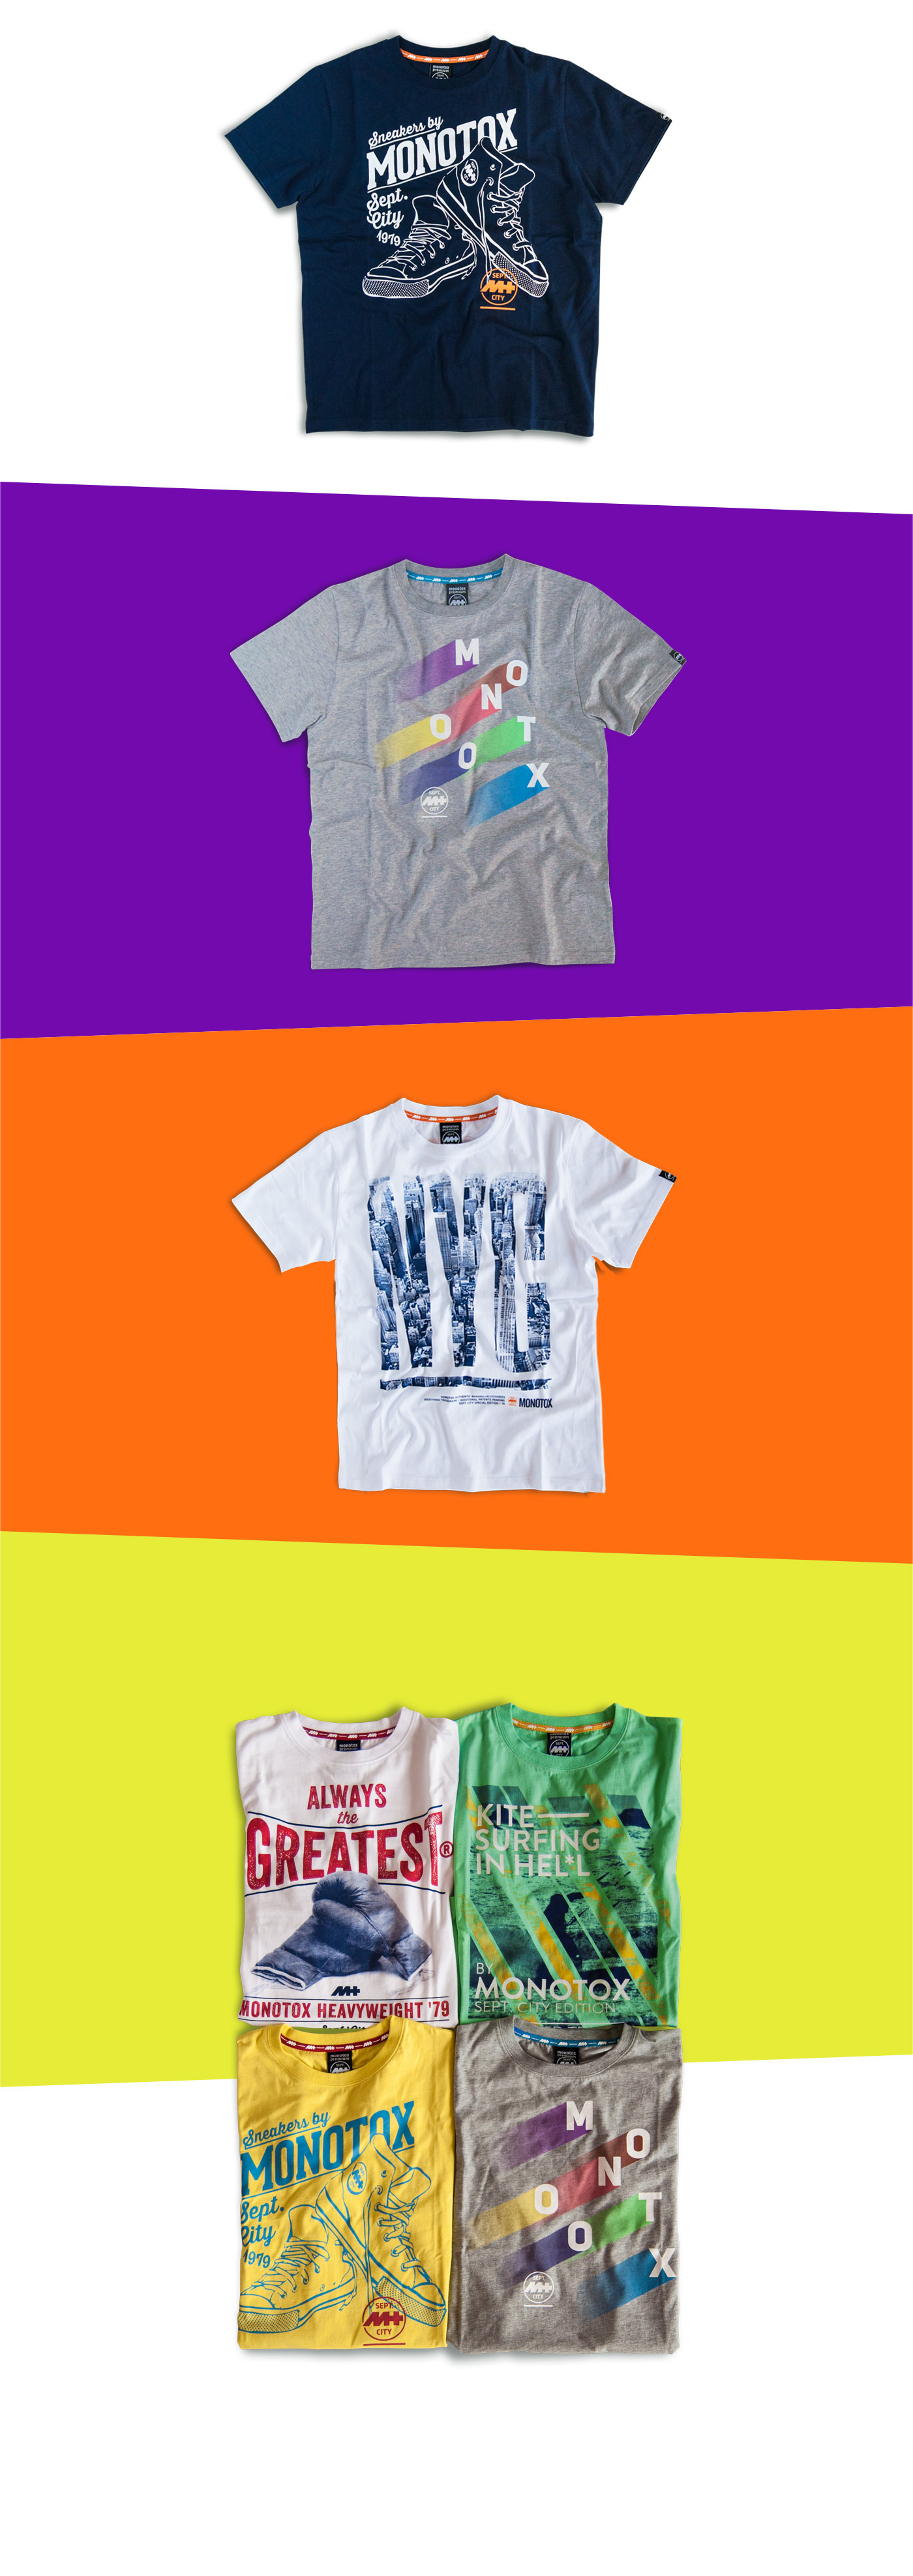 tshirts t-shirts graphics tee tshirt t-shirt athletic design original tshirts Surf Boxing cassette Racing palms skull